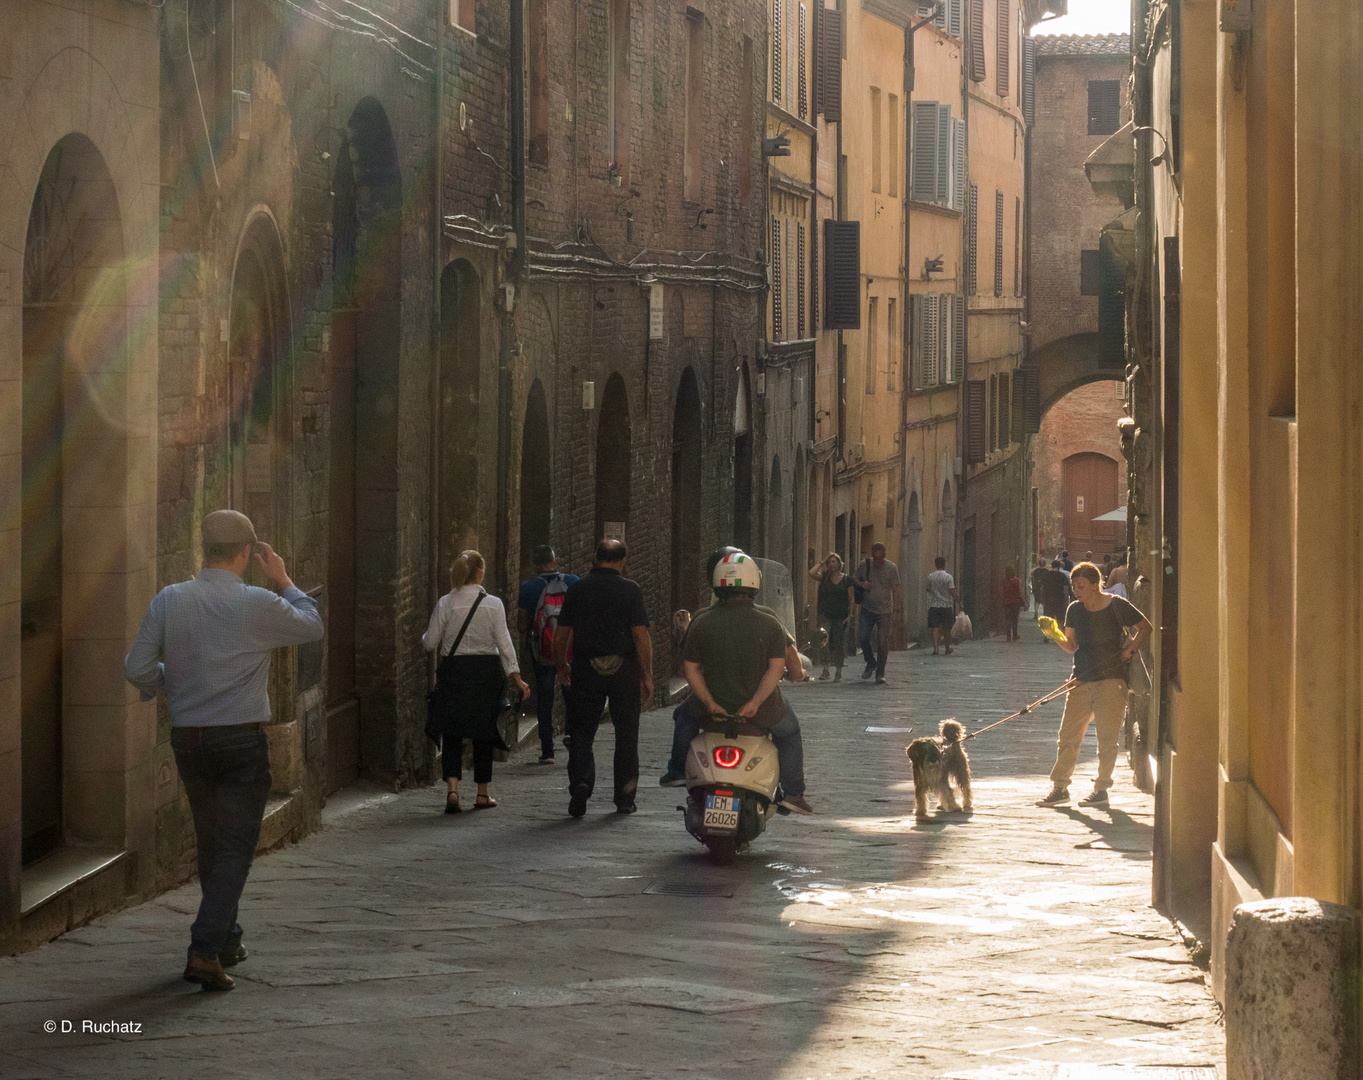 Alltagsszene in Siena